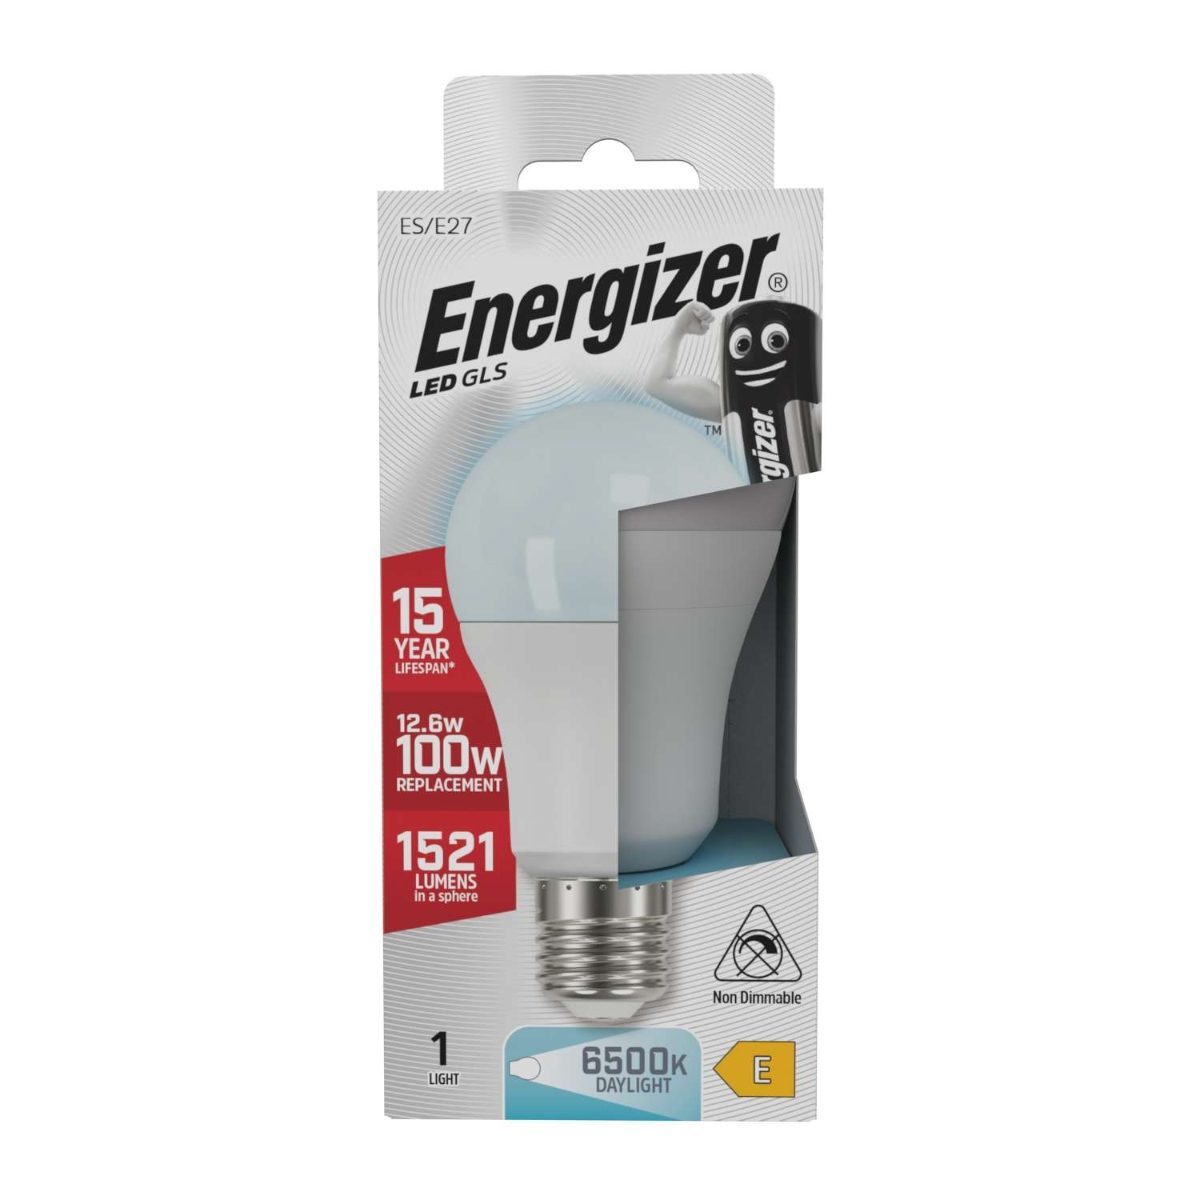 Energizer LED GLS E27 (ES) 1.521 Lúmenes 13,5W 6.500K (Luz Día), Caja de 1